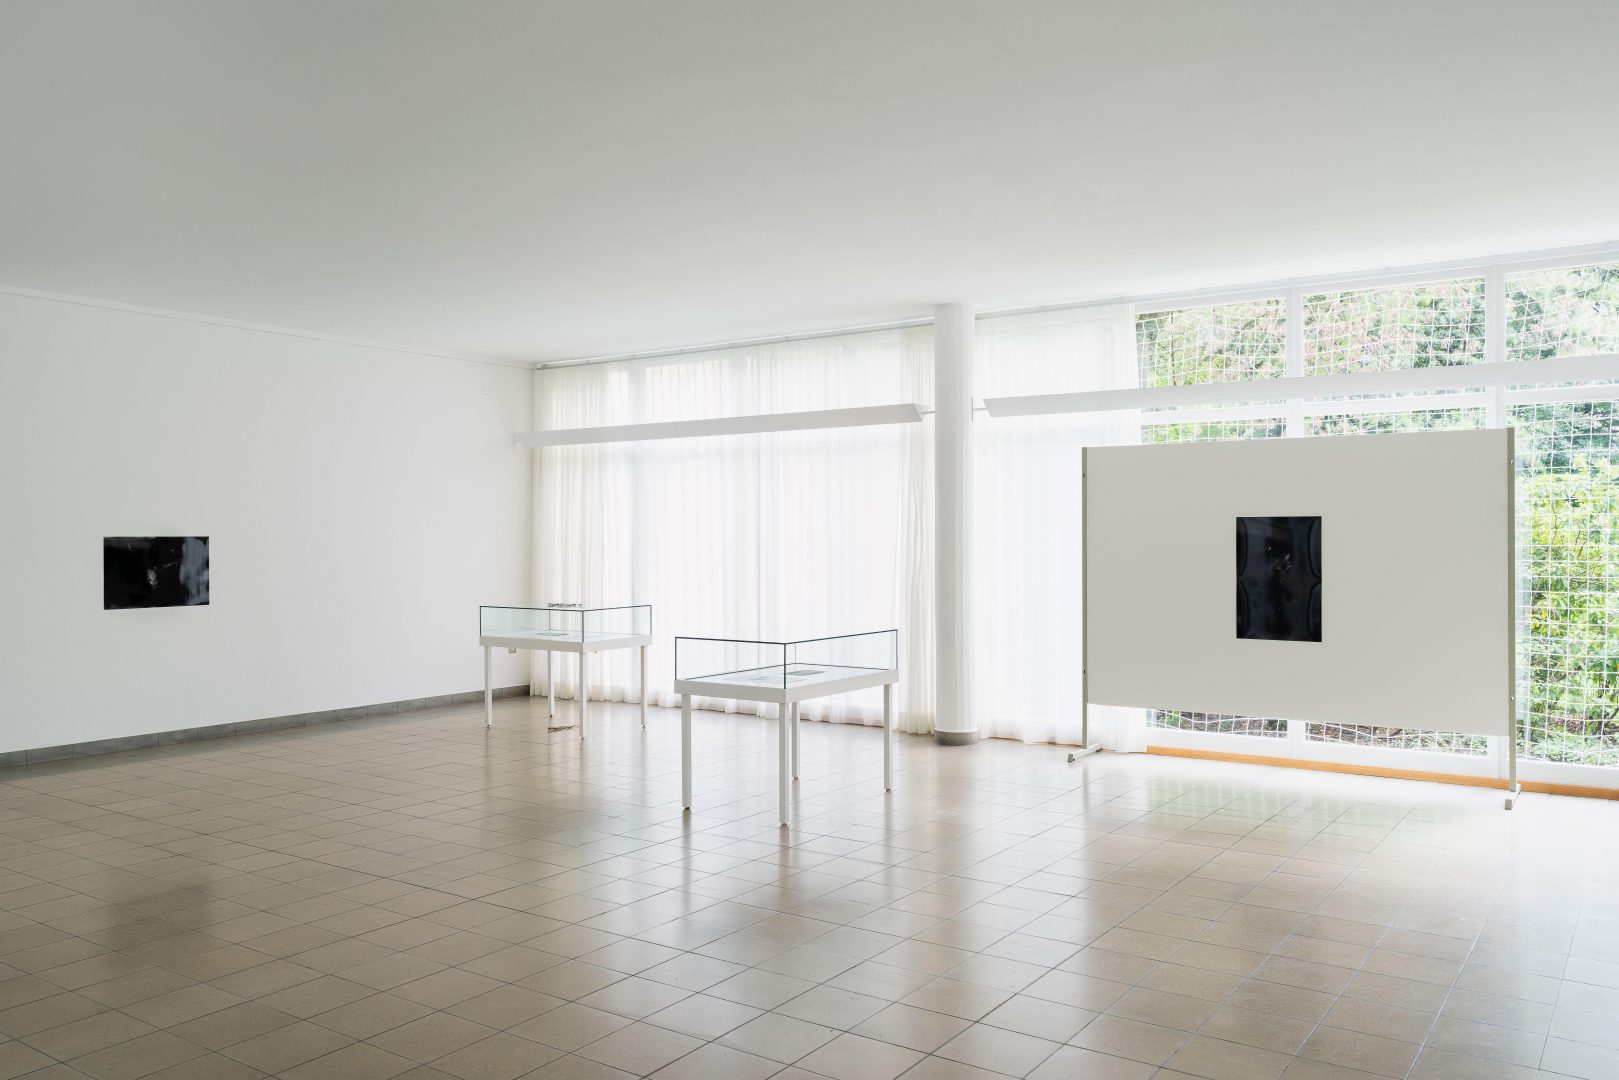 Installation view: Richard Frater, Invitation Dilemma, 2020, installation view from the exhibition ‘Im Volksgarten”, Kunsthaus Glarus